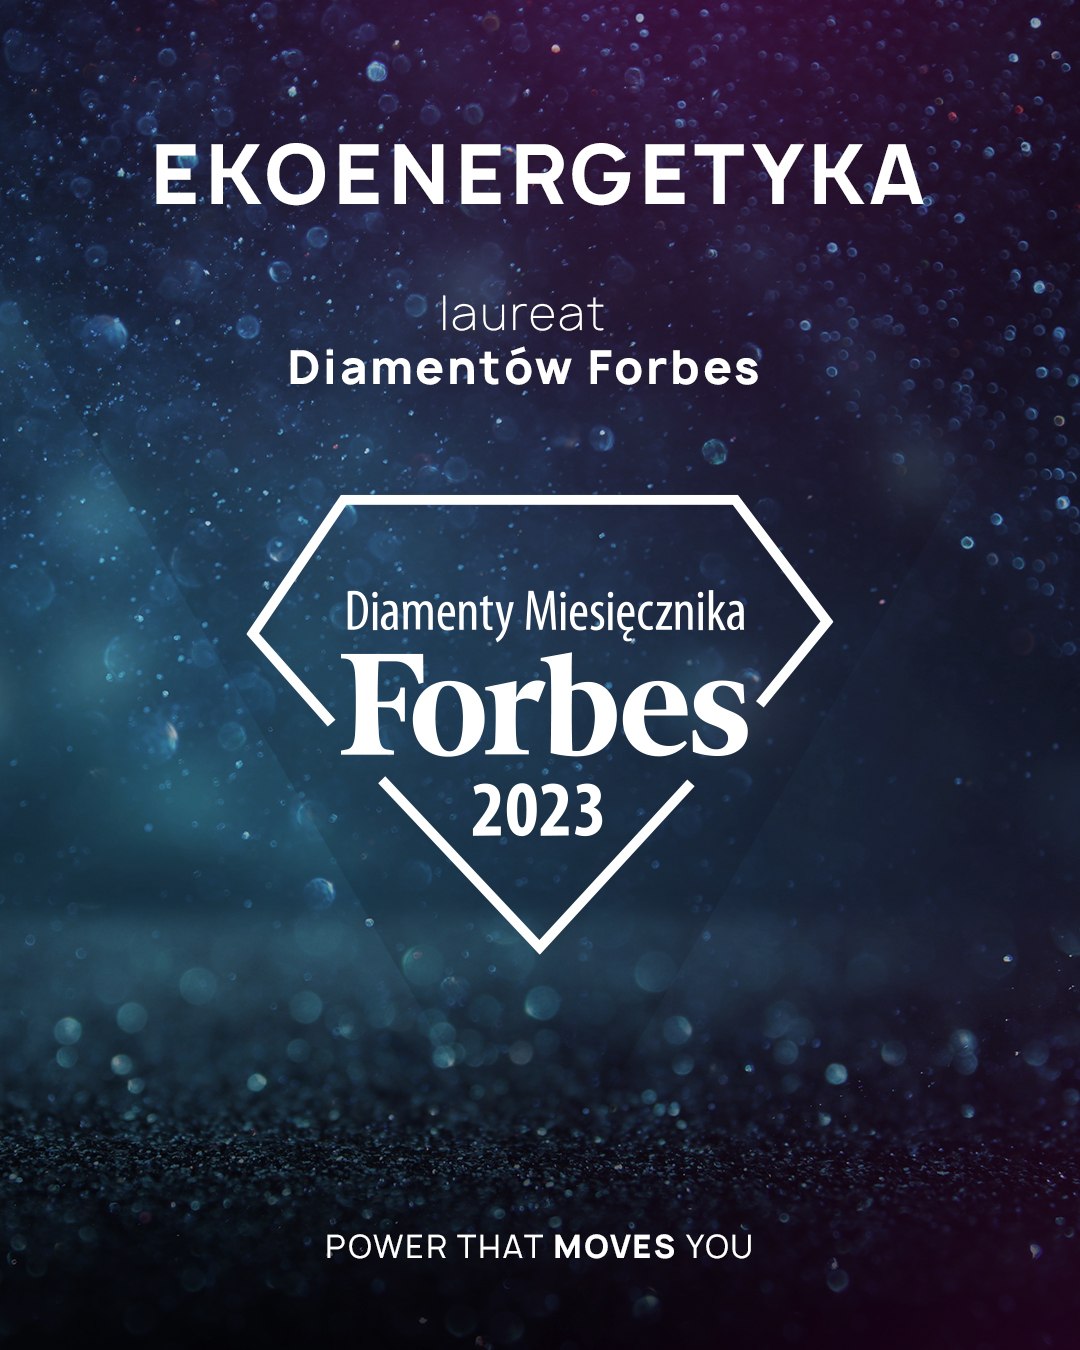 Ekoenergetyka mit dem Forbes Diamanten ausgezeichnet